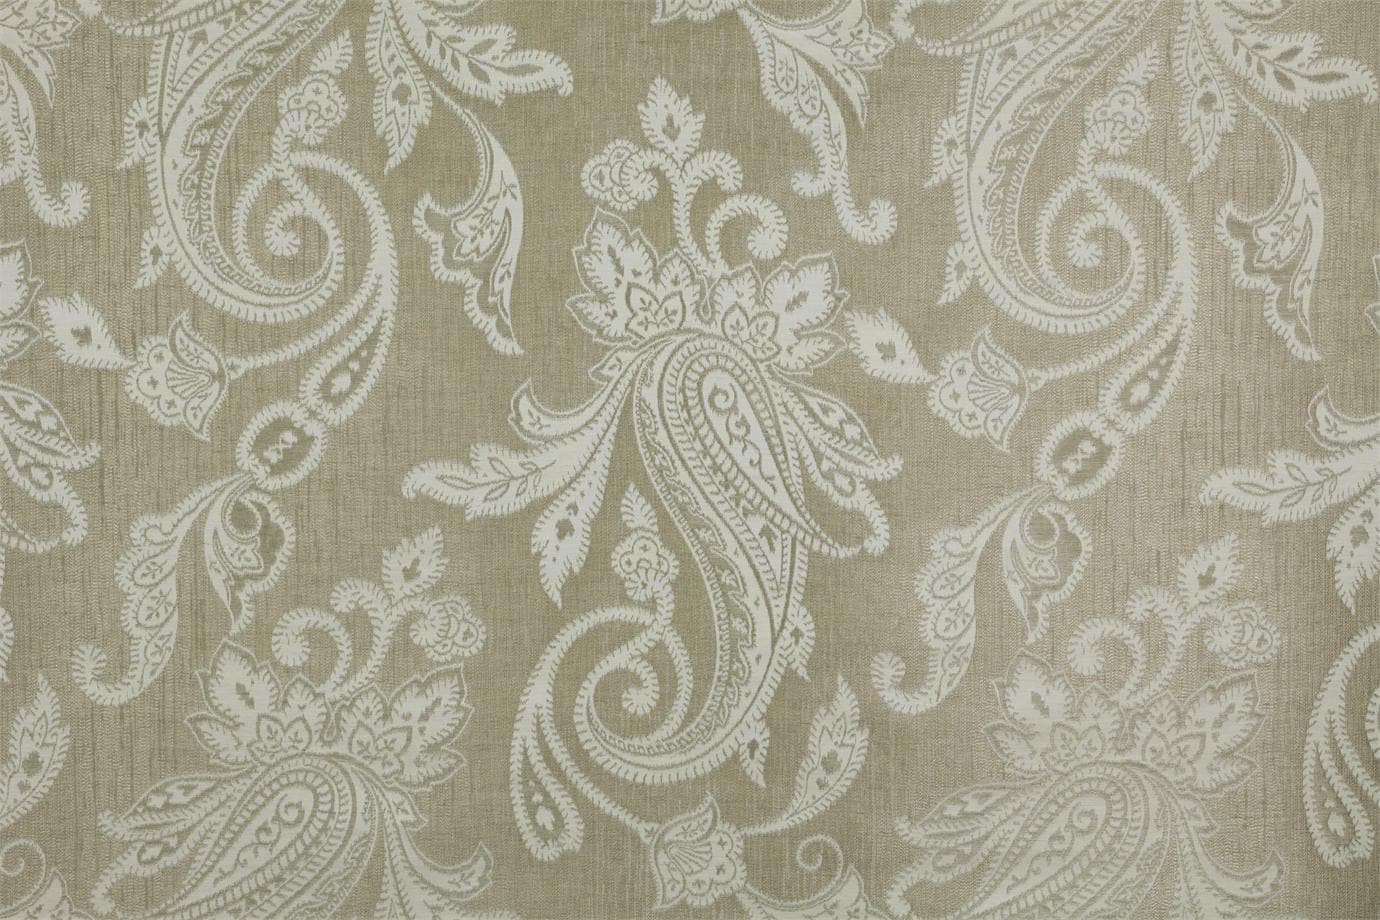 J1951 SECONDIGLIANO 004 Argento-ferro home decoration fabric